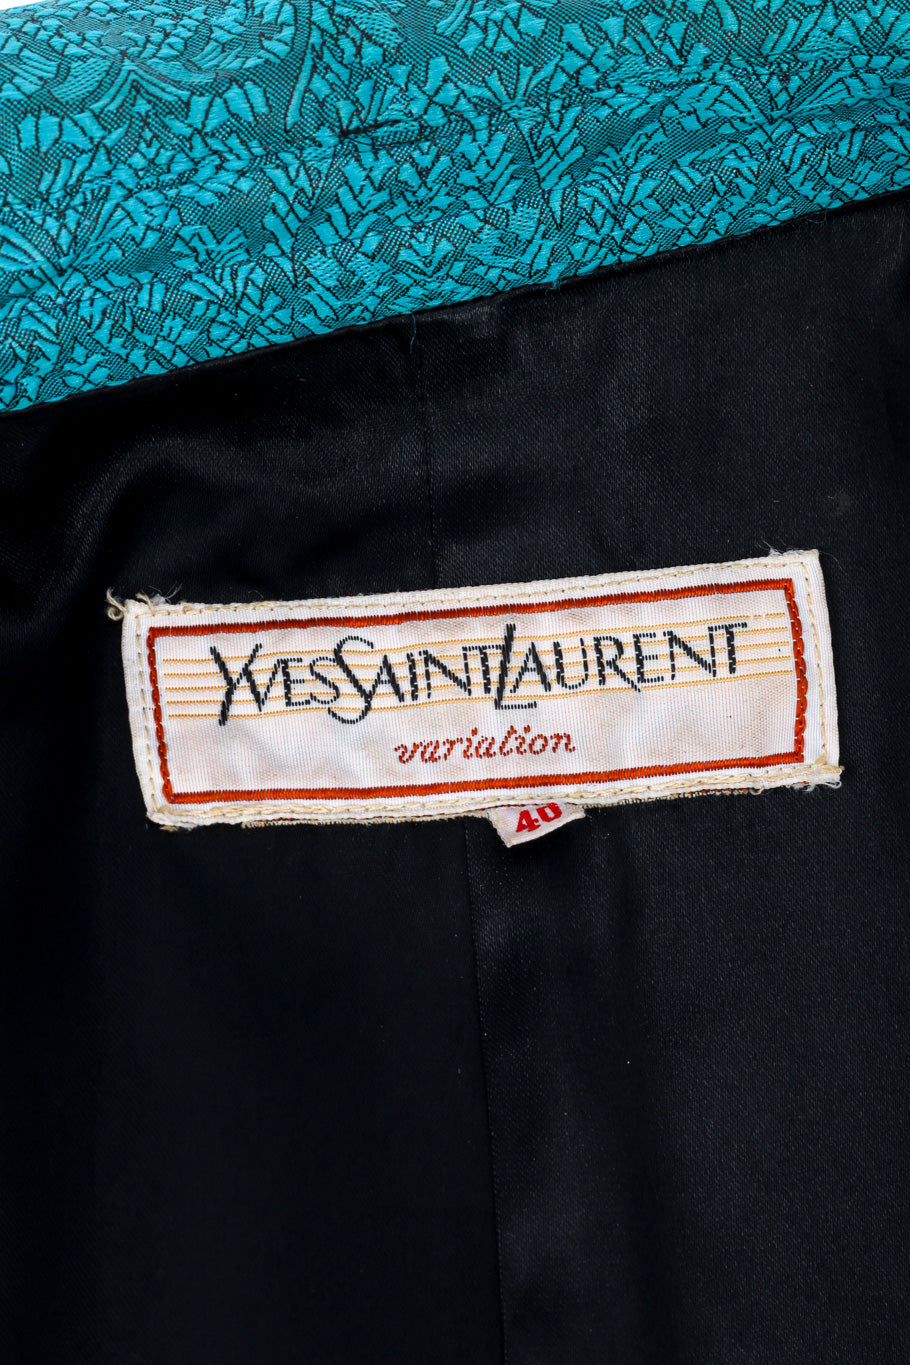 Vintage Yves Saint Laurent Damask Trench Coat signature label closeup @recessla